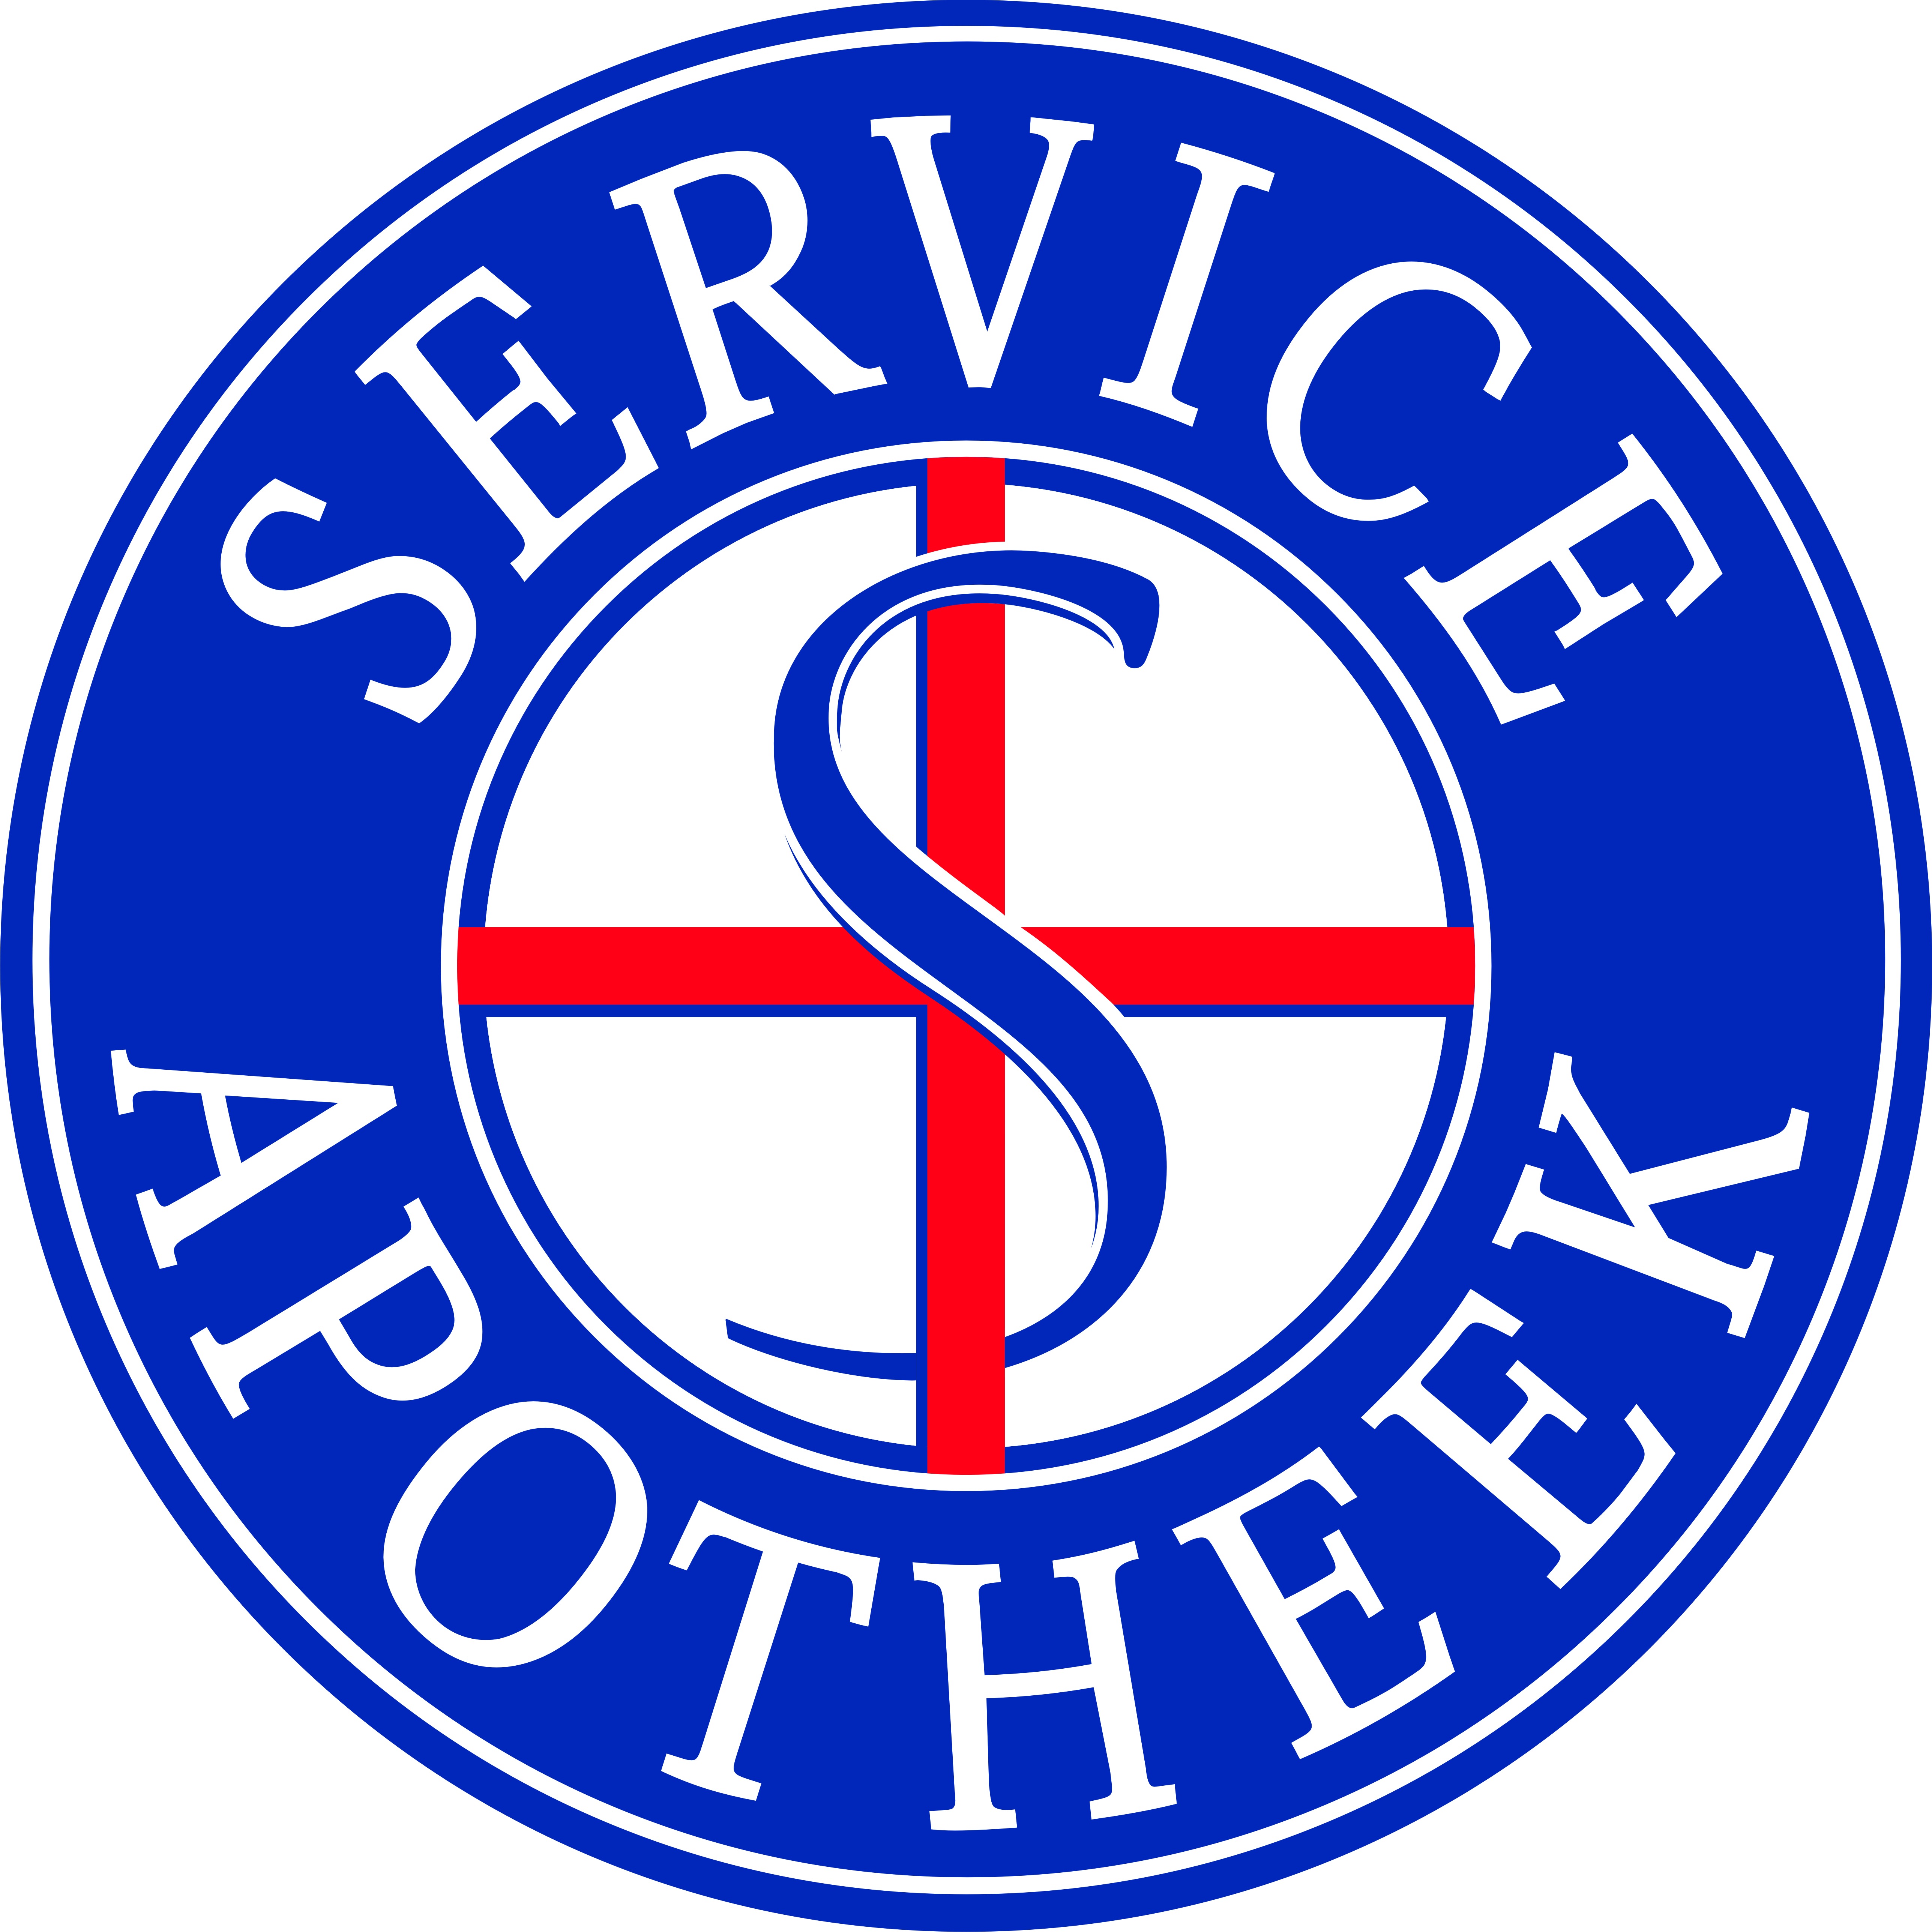 Service Apotheek Nieuw Sloten Logo